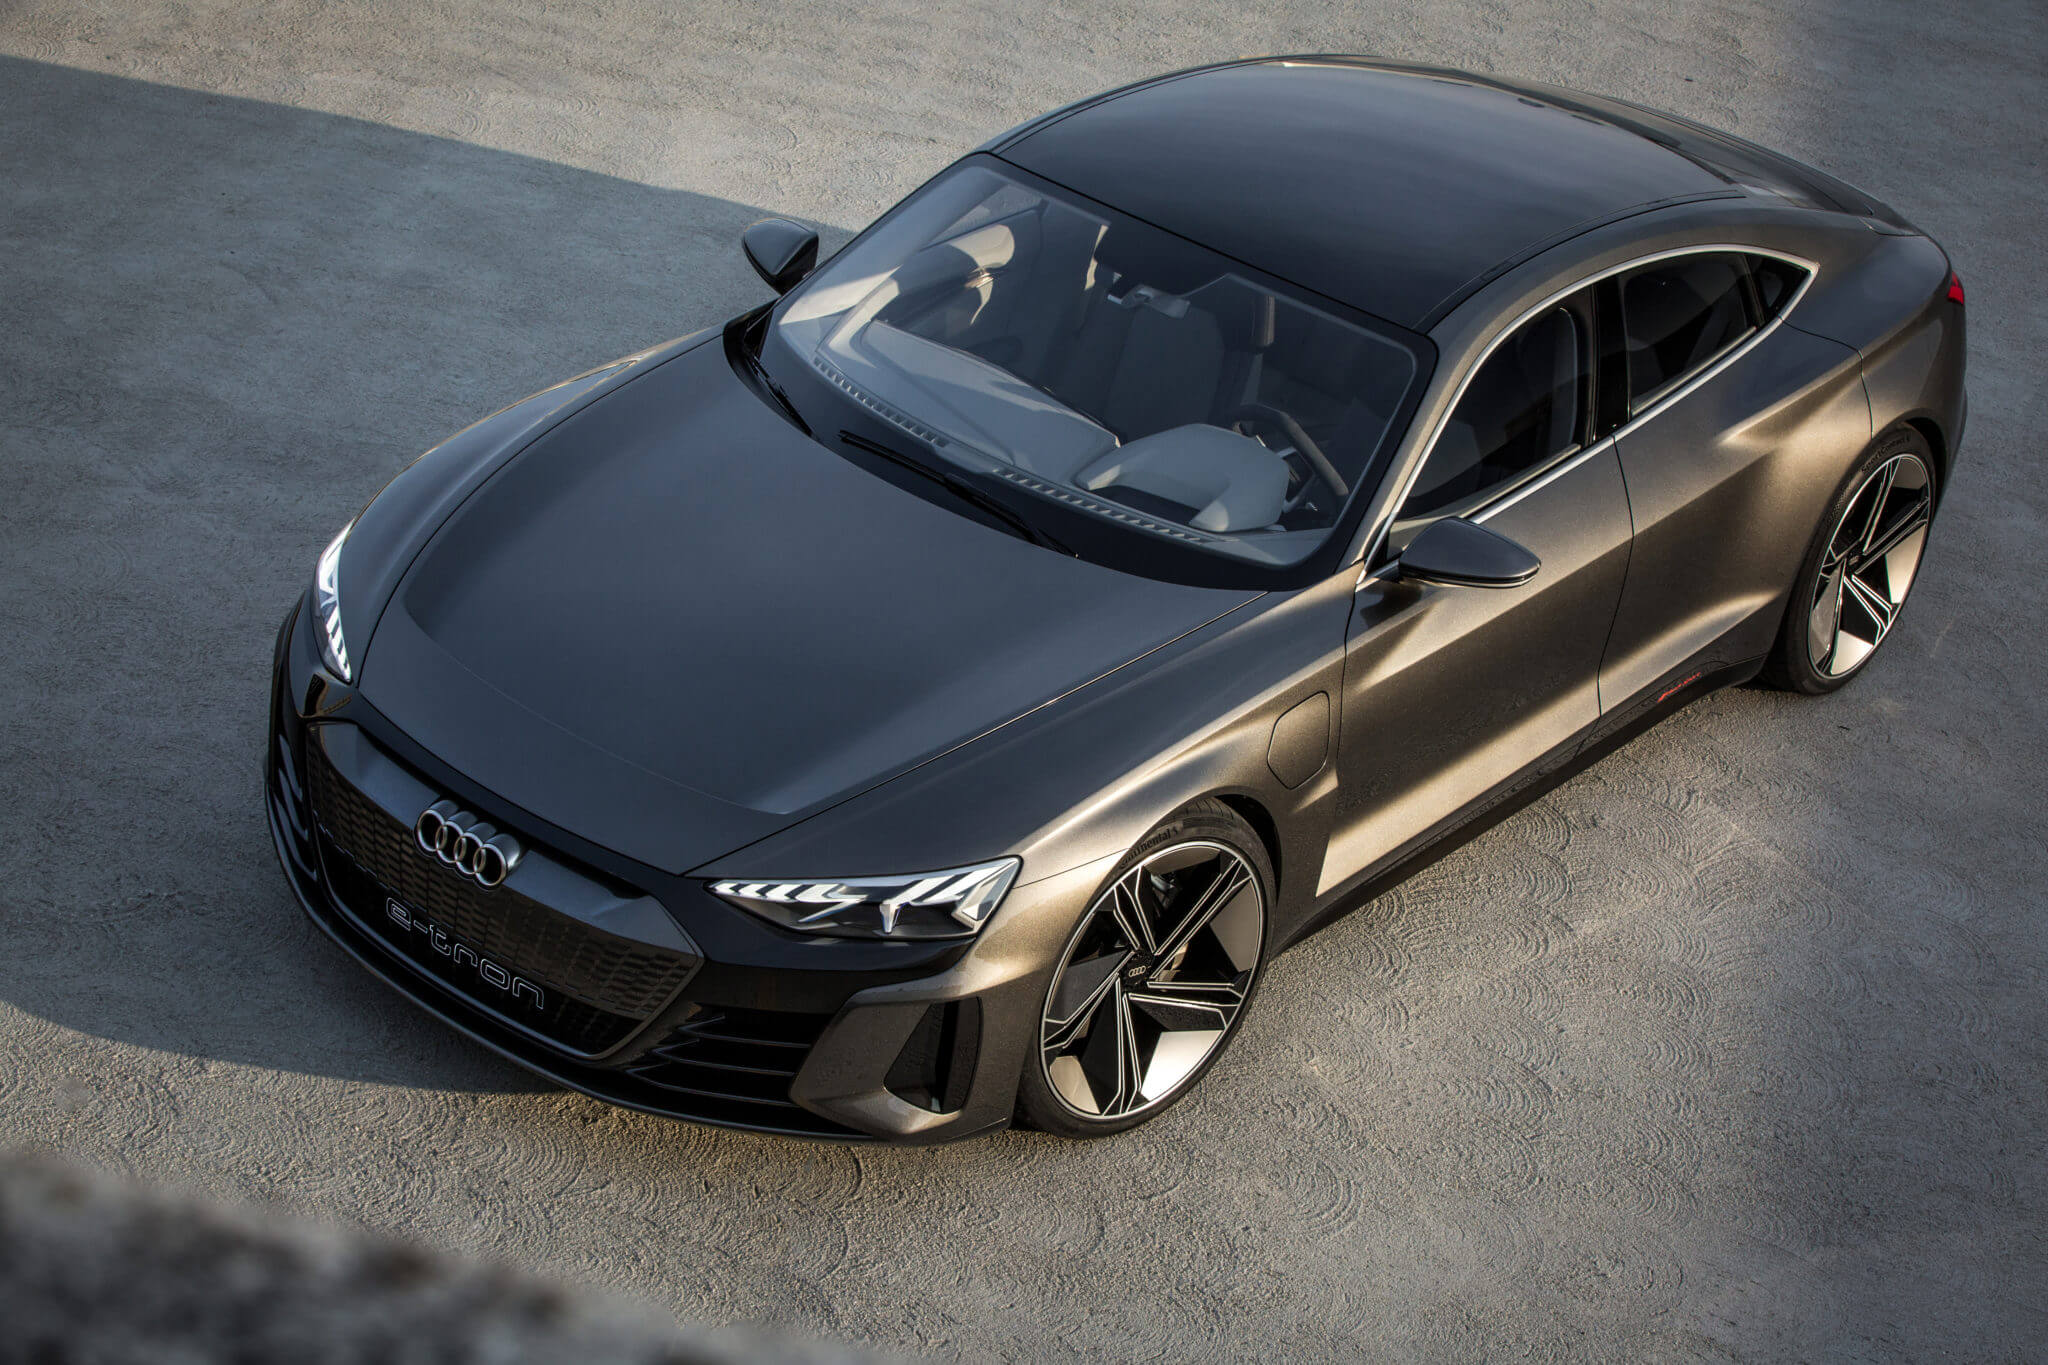 Etron. Audi e-tron gt. Audi e-tron gt 2020 Concept. Audi e-tron 2020 седан. Ауди е-трон gt 2020.